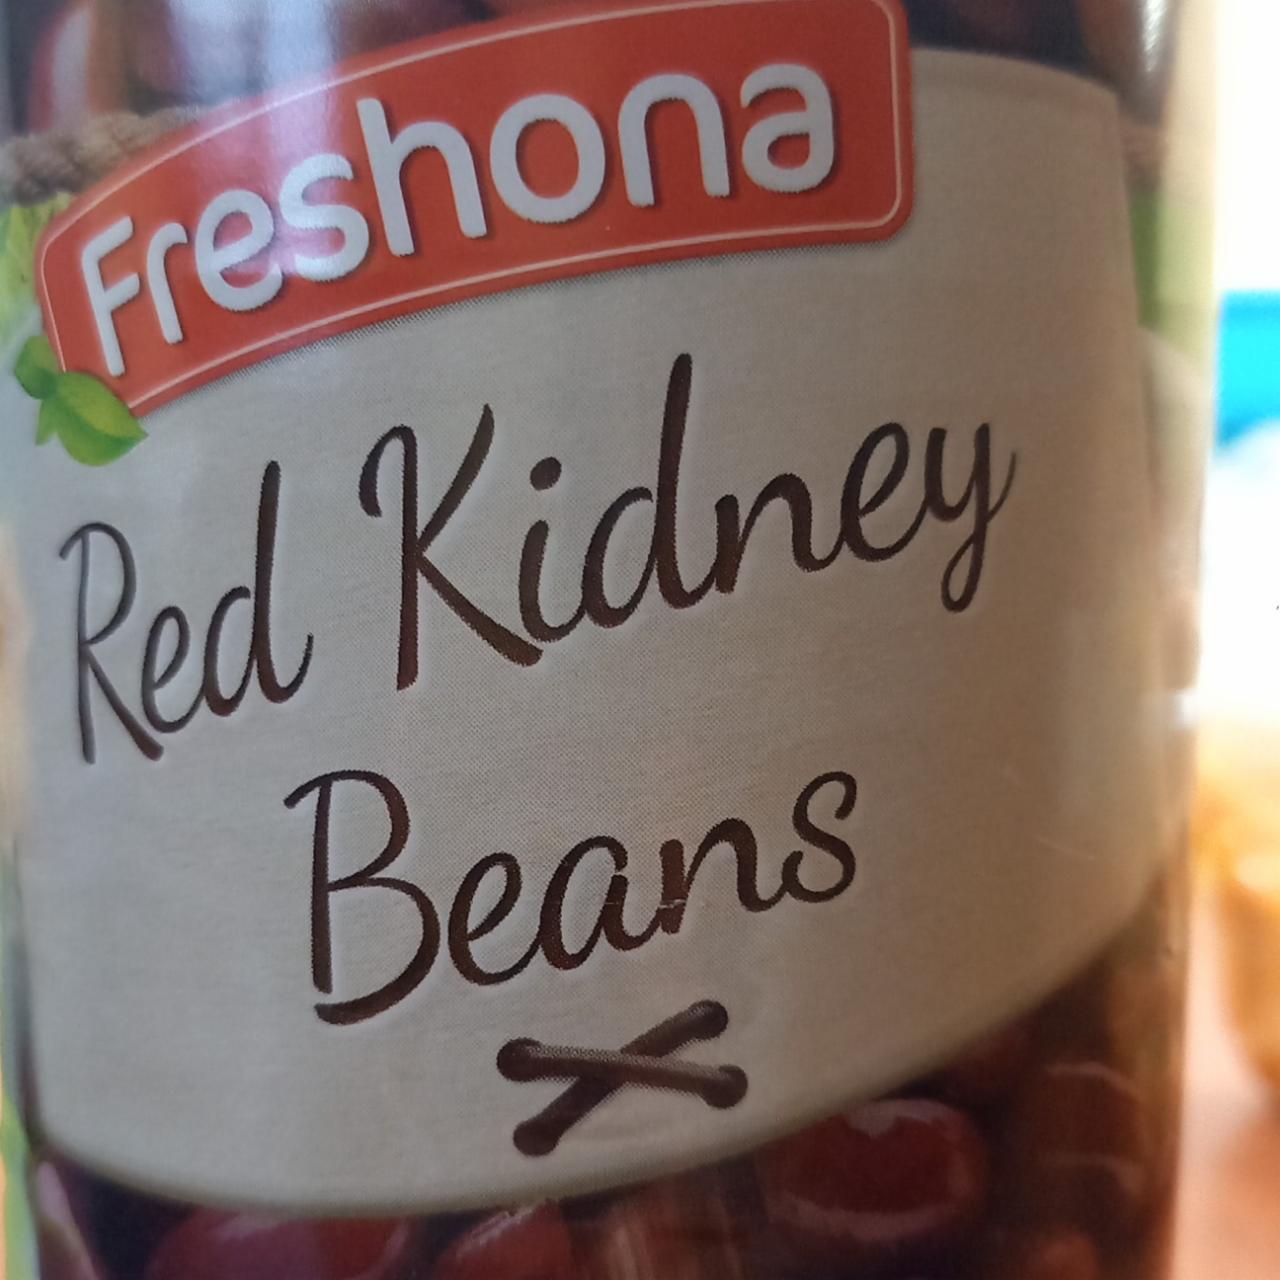 Fotografie - Red Kidney Beans Freshona